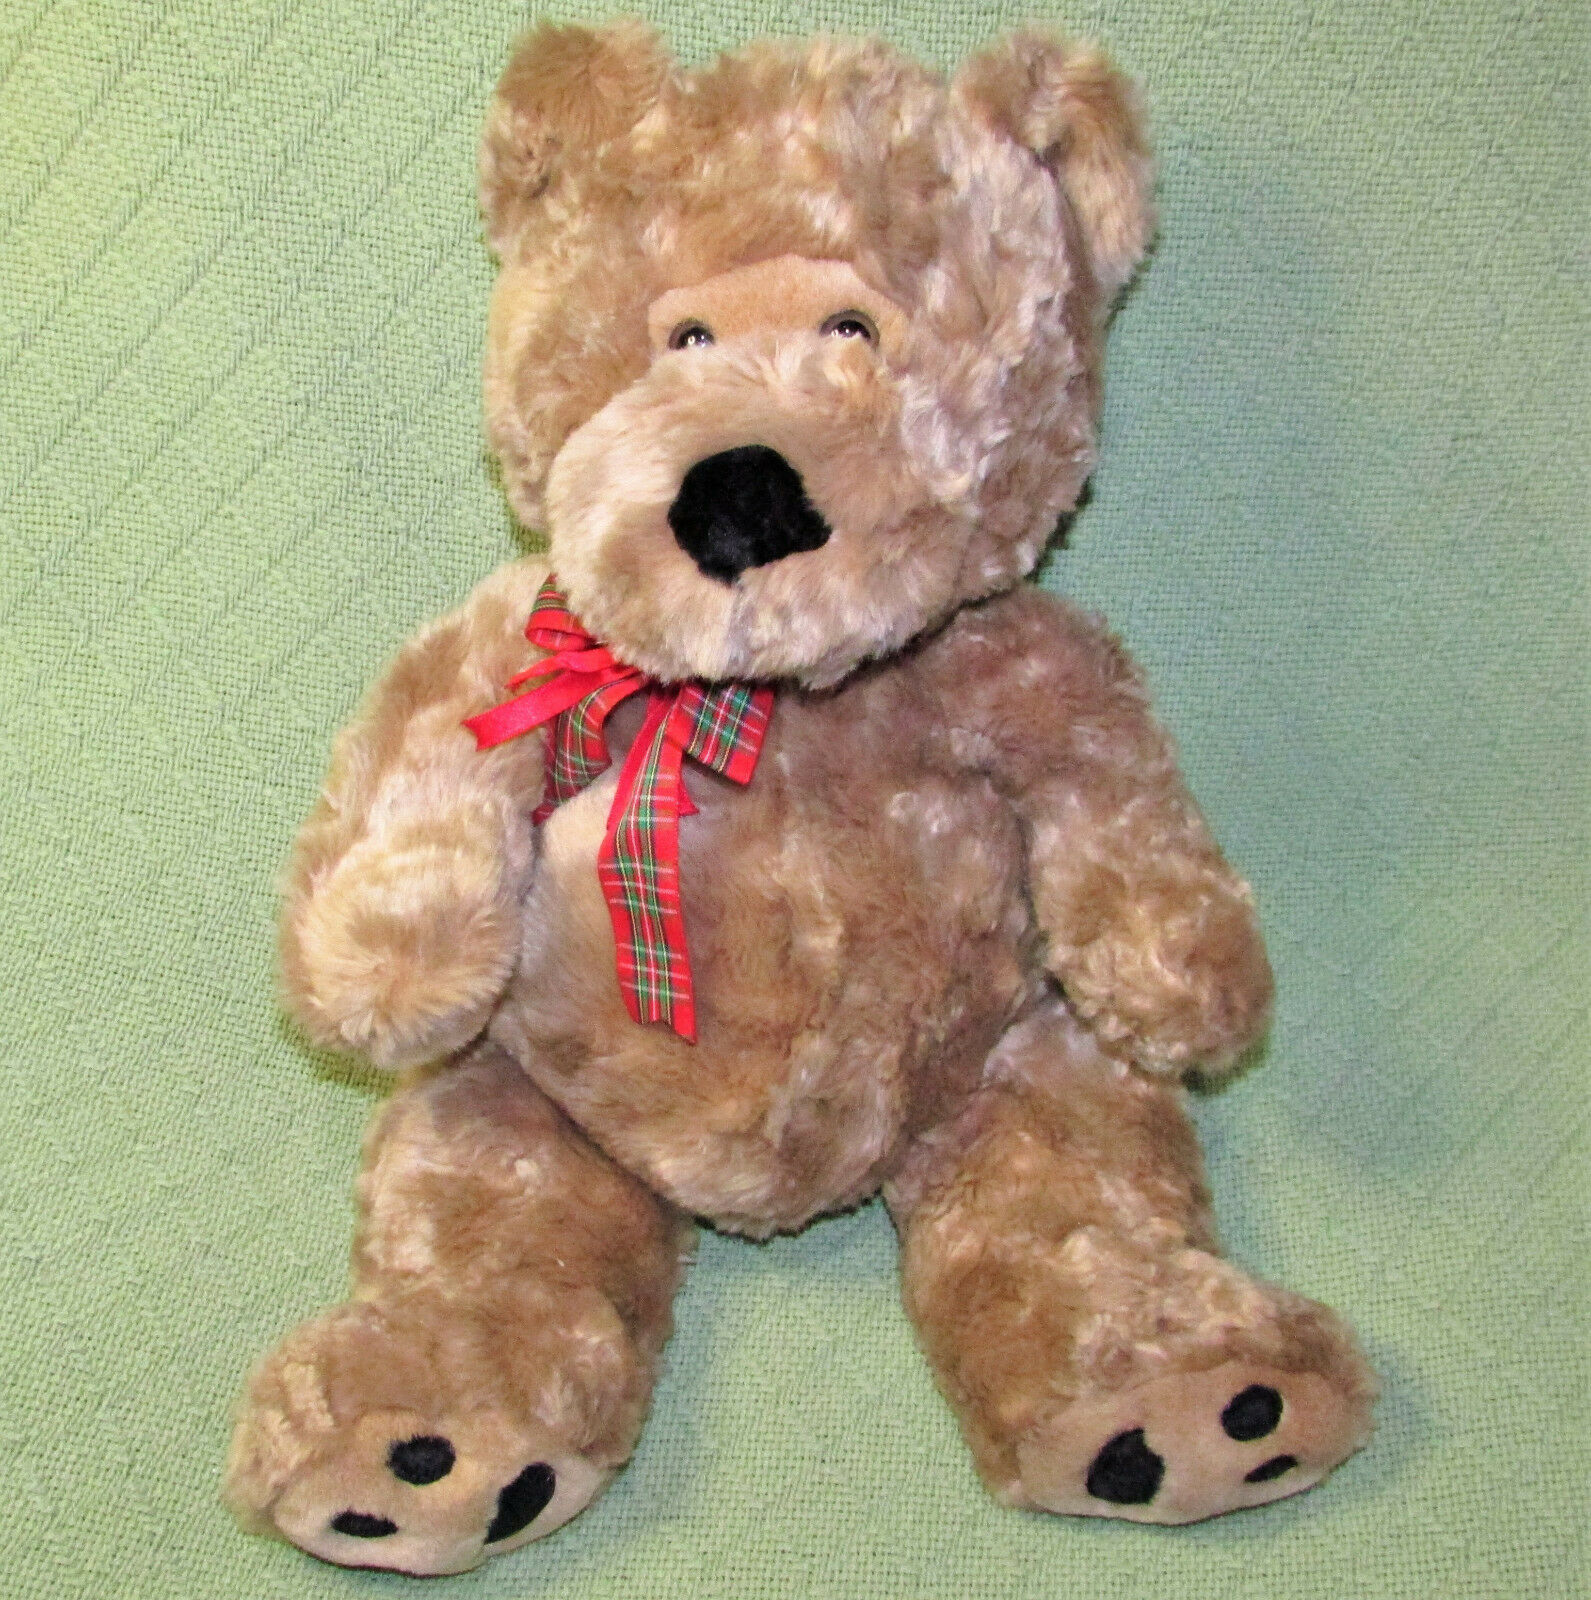 1990 winnie the pooh stuffed animal